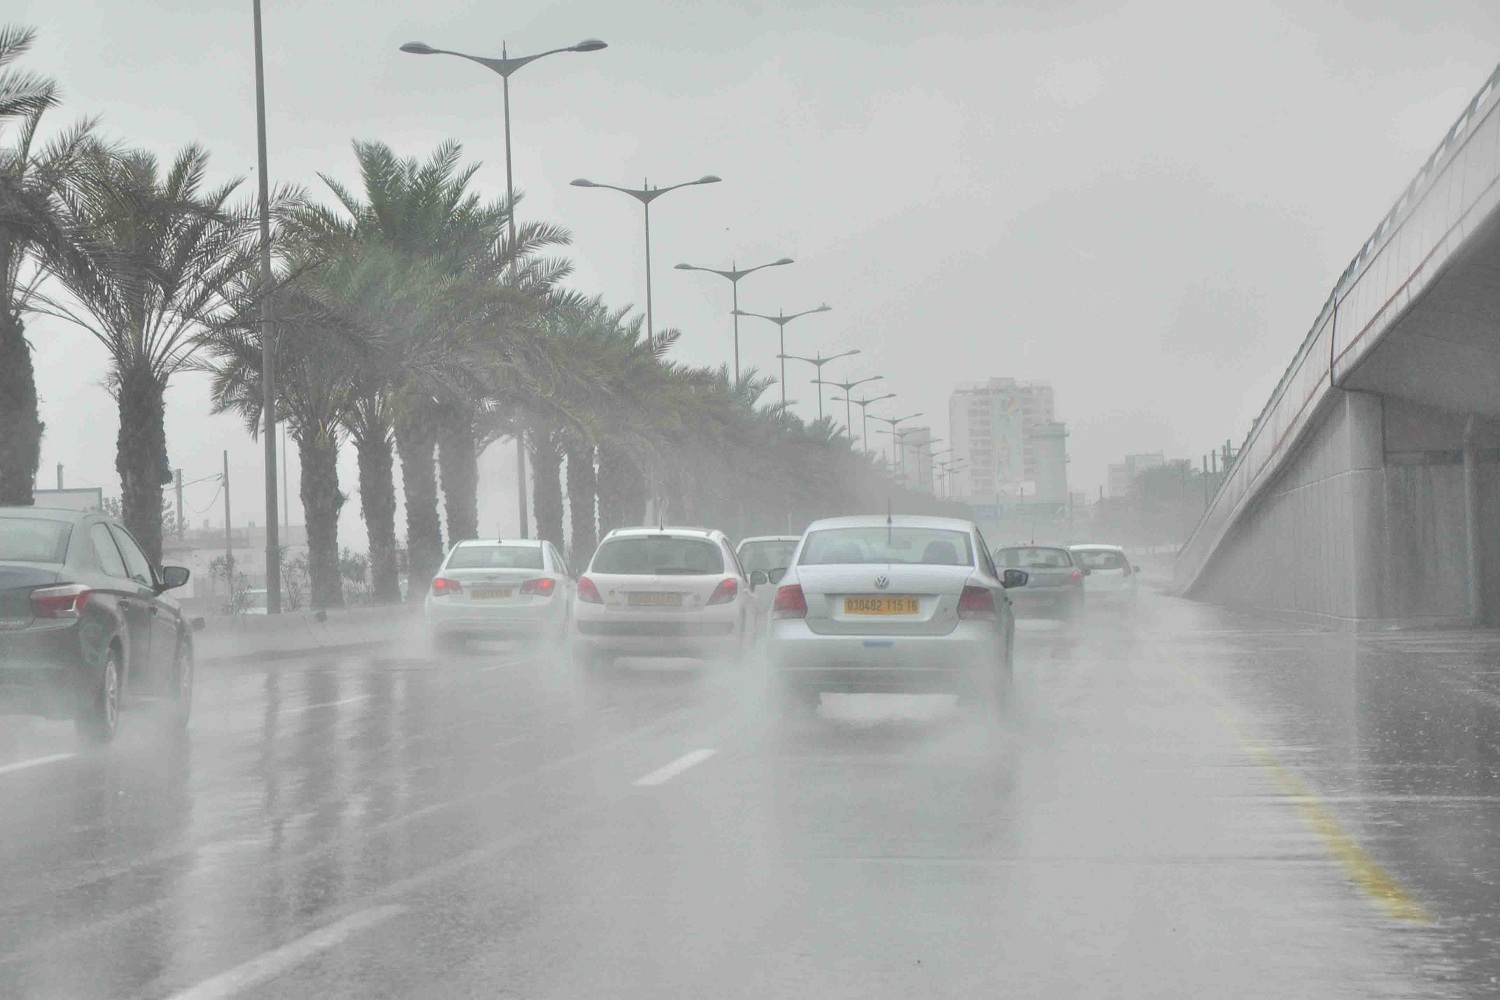 شبورة وأمطار.. الأرصاد الجوية تكشف حالة الطقس اليوم ودرجات الحرارة